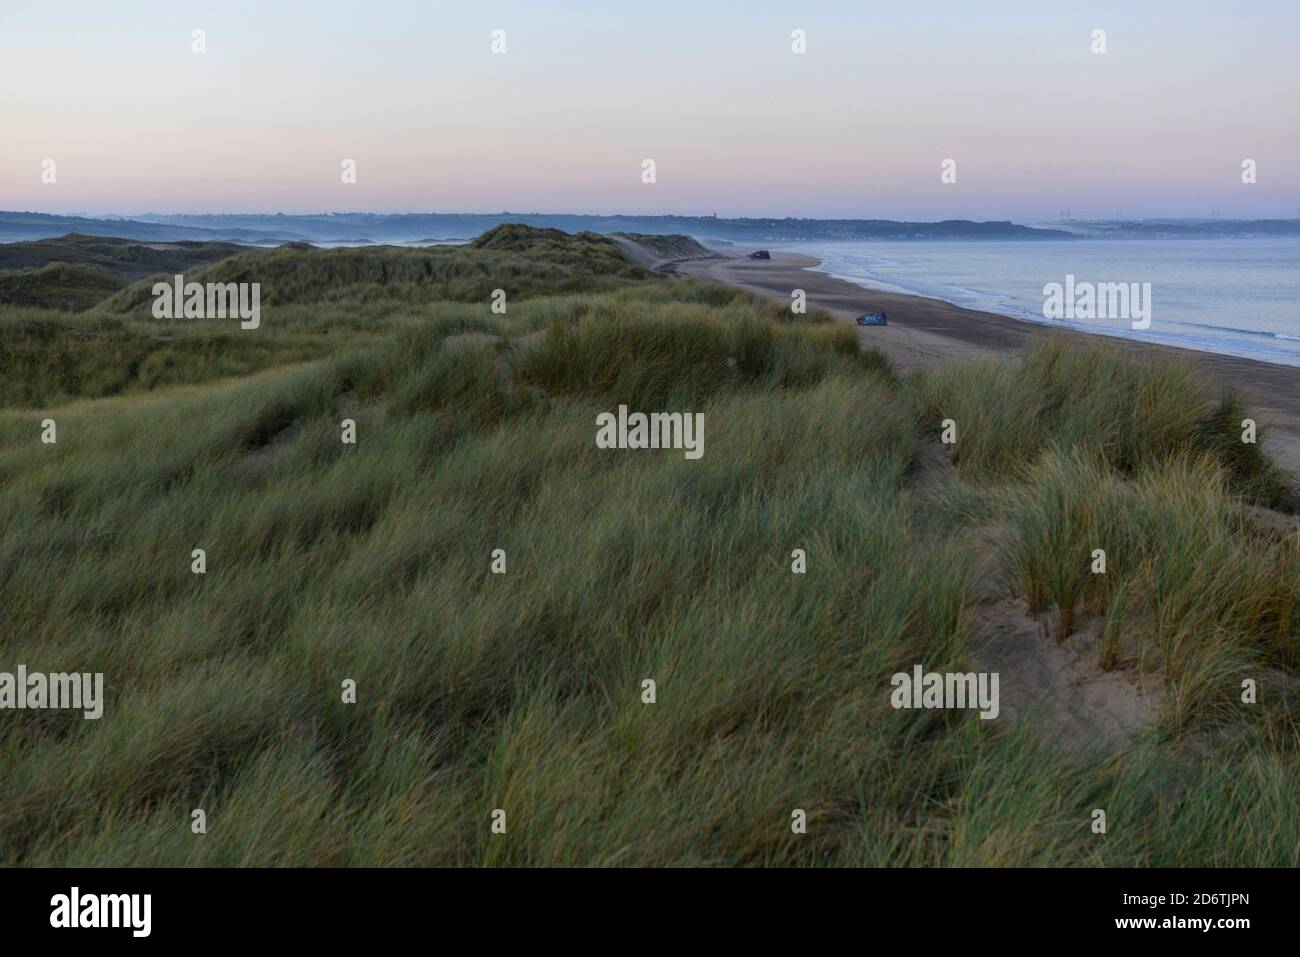 Les dunes de Biville le long de la côte normande, sur la péninsule du Cotentin. Vue d'ensemble des dunes de Biville au crépuscule. Le site est une zone naturelle protégée Banque D'Images